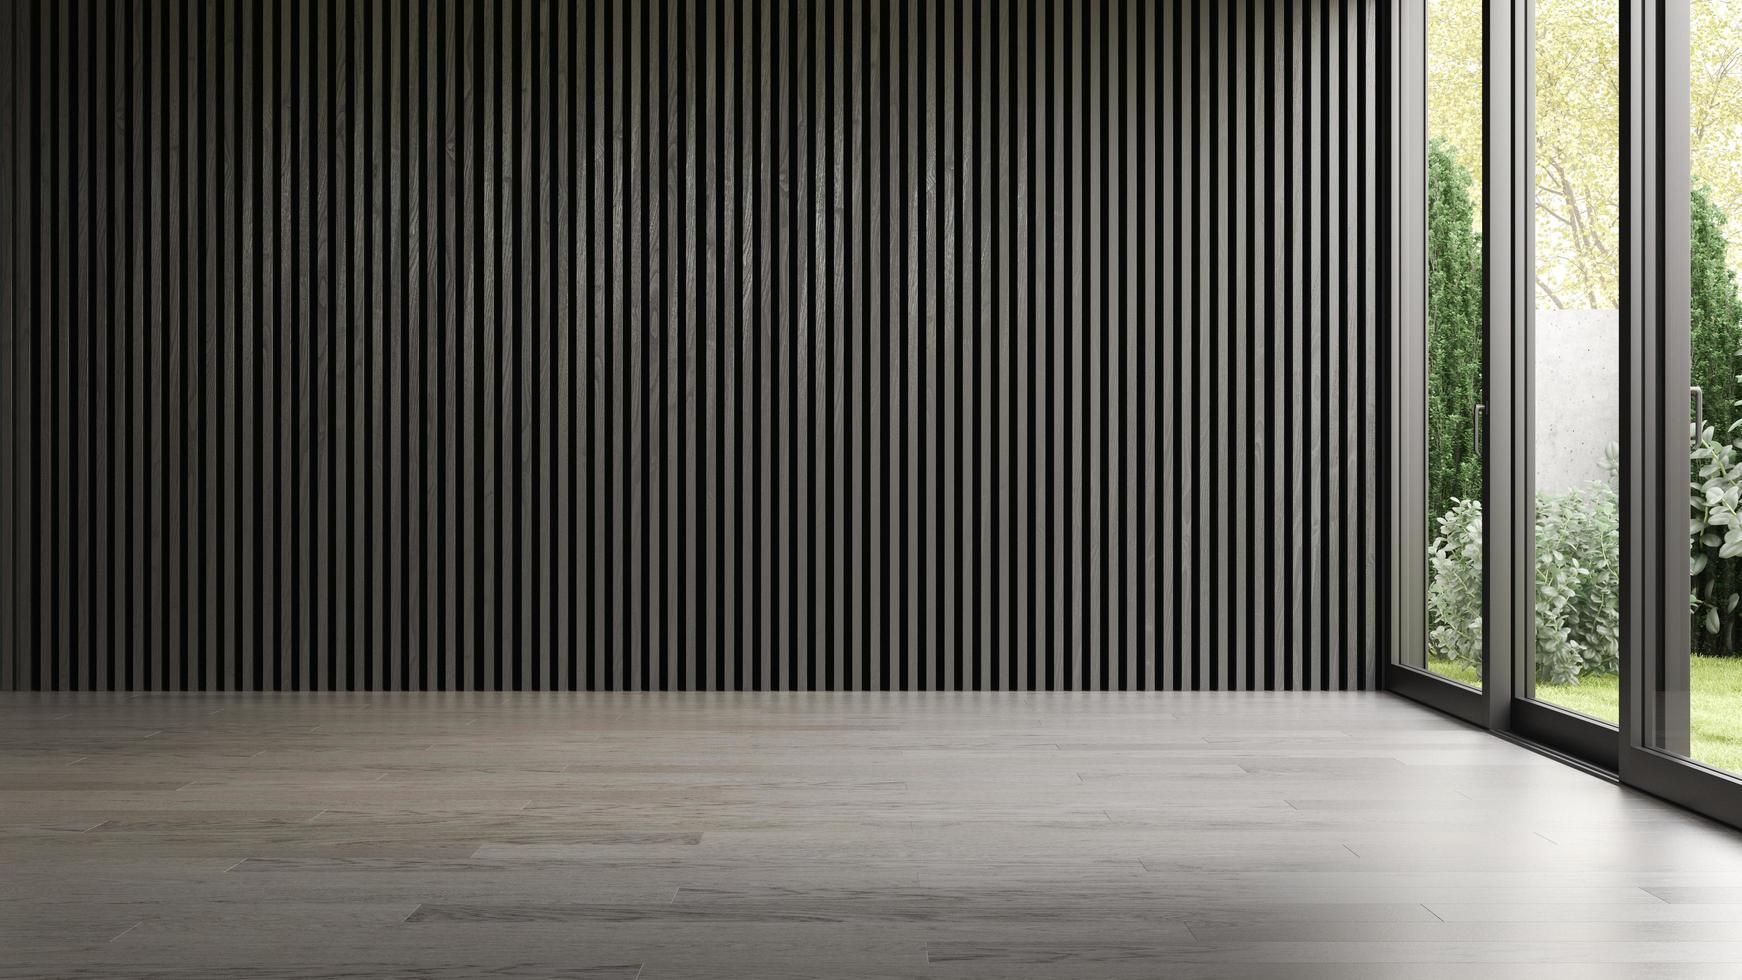 Interior empty room in 3D rendering photo